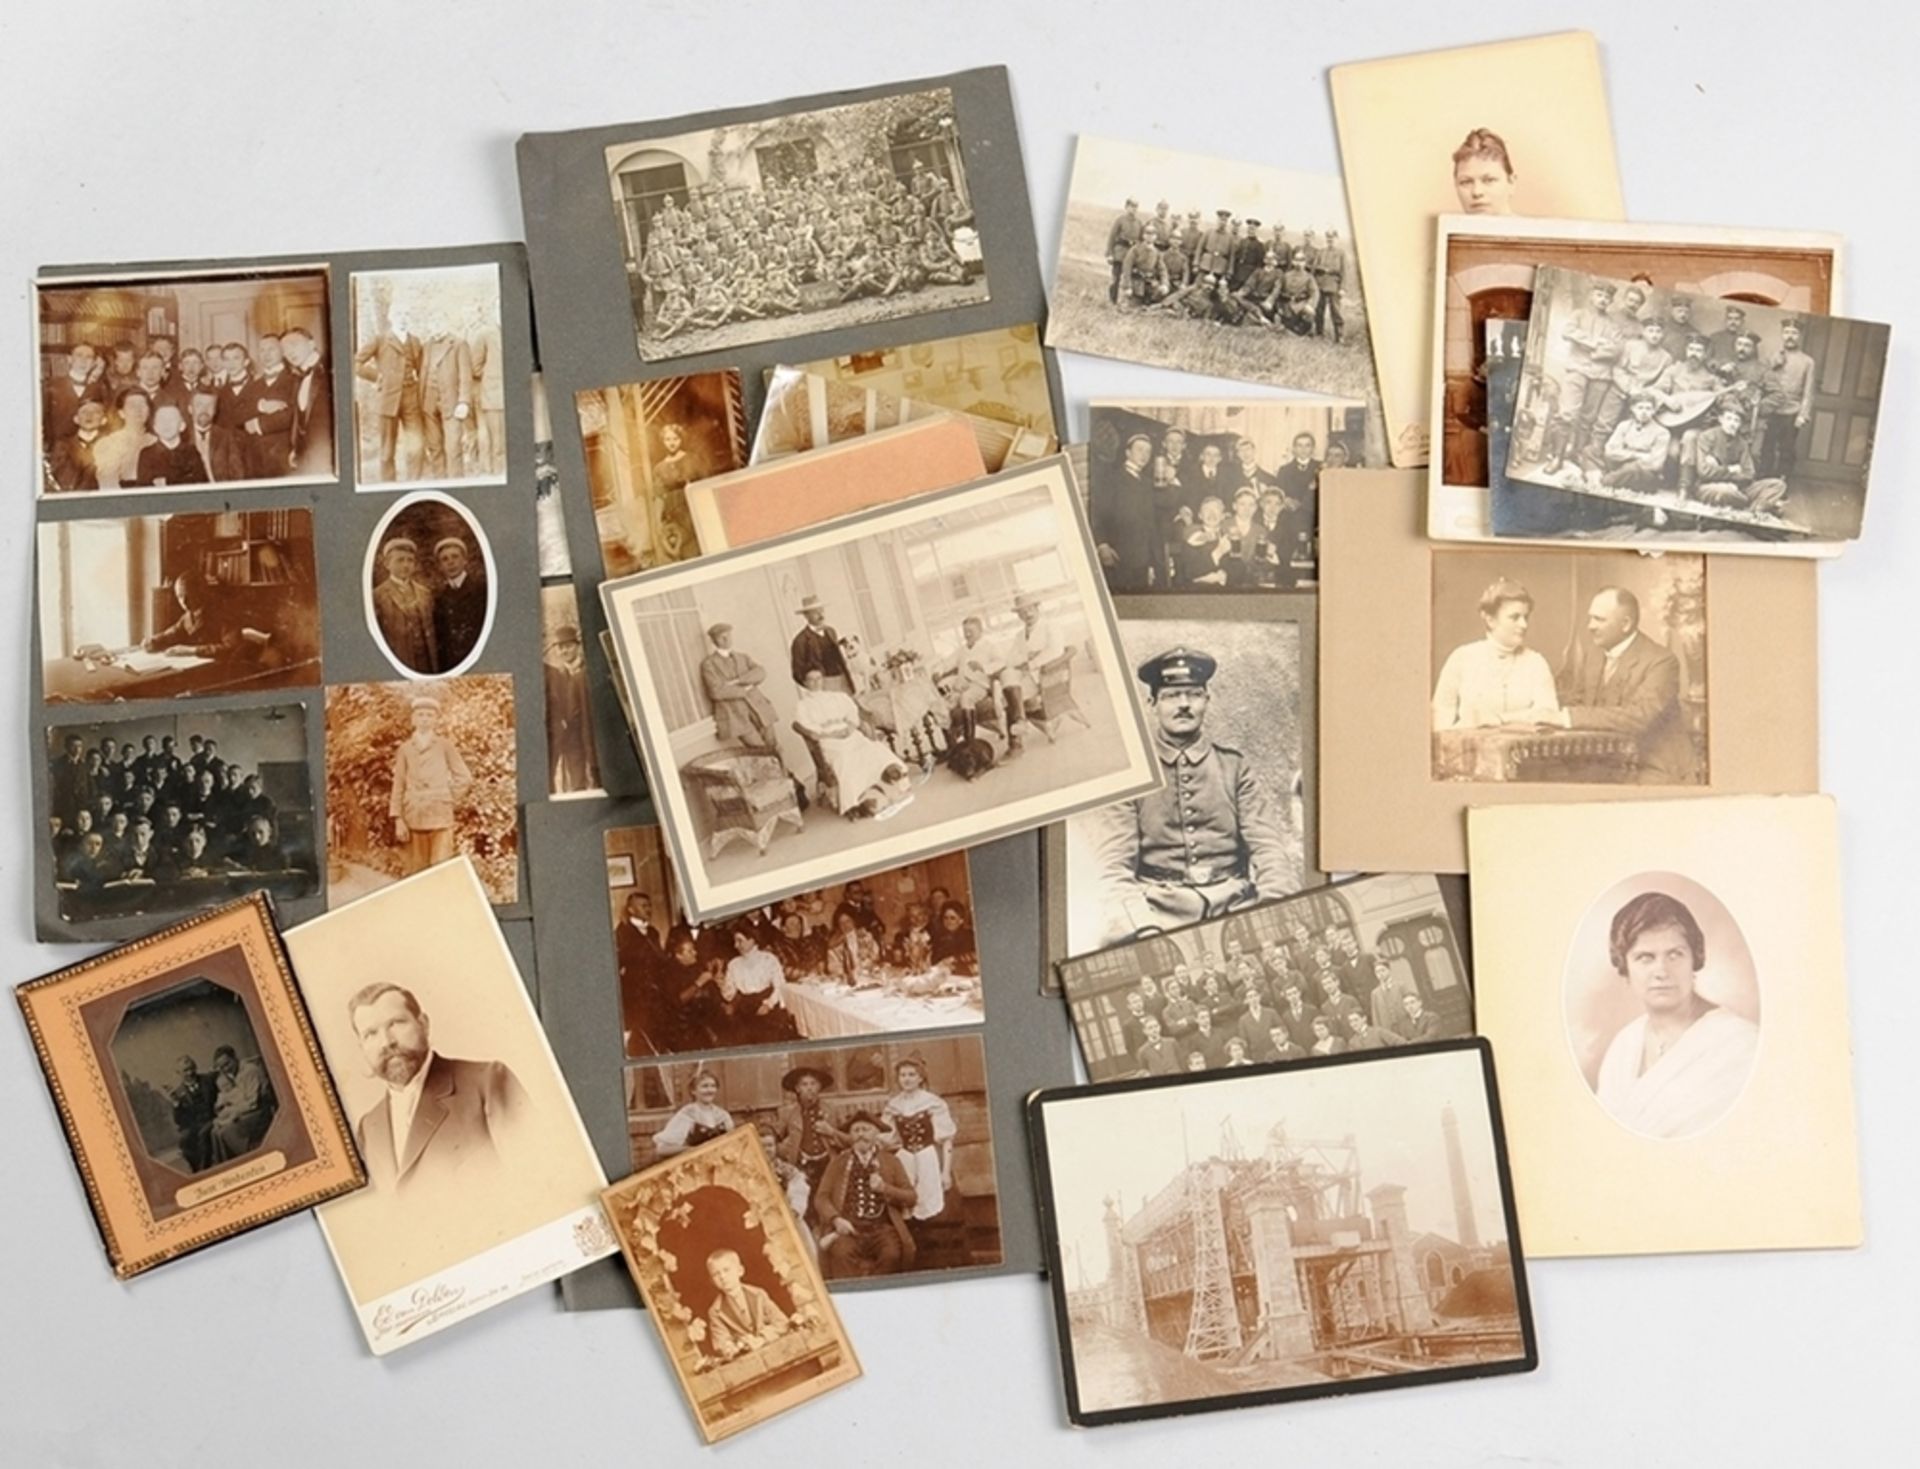 Sammlung von Original-Fotografien66 Fotografien, davon 14 Atelierfotografien (Cartes de Visit